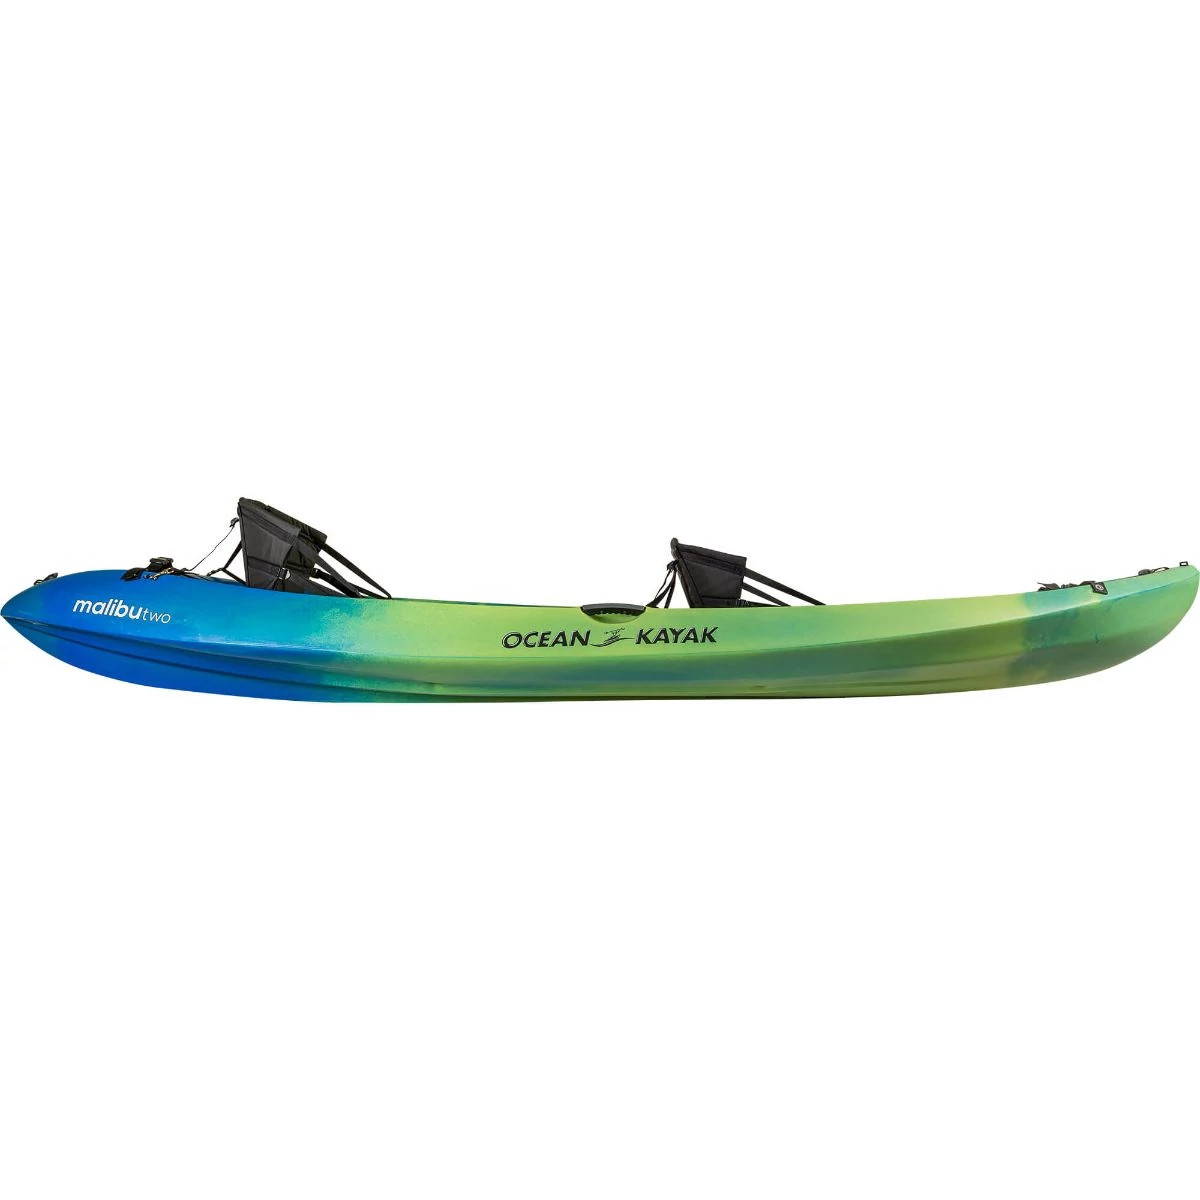 Ocean Kayak Malibu 2XL kayak  2 person sit on top Ocean Kayak 